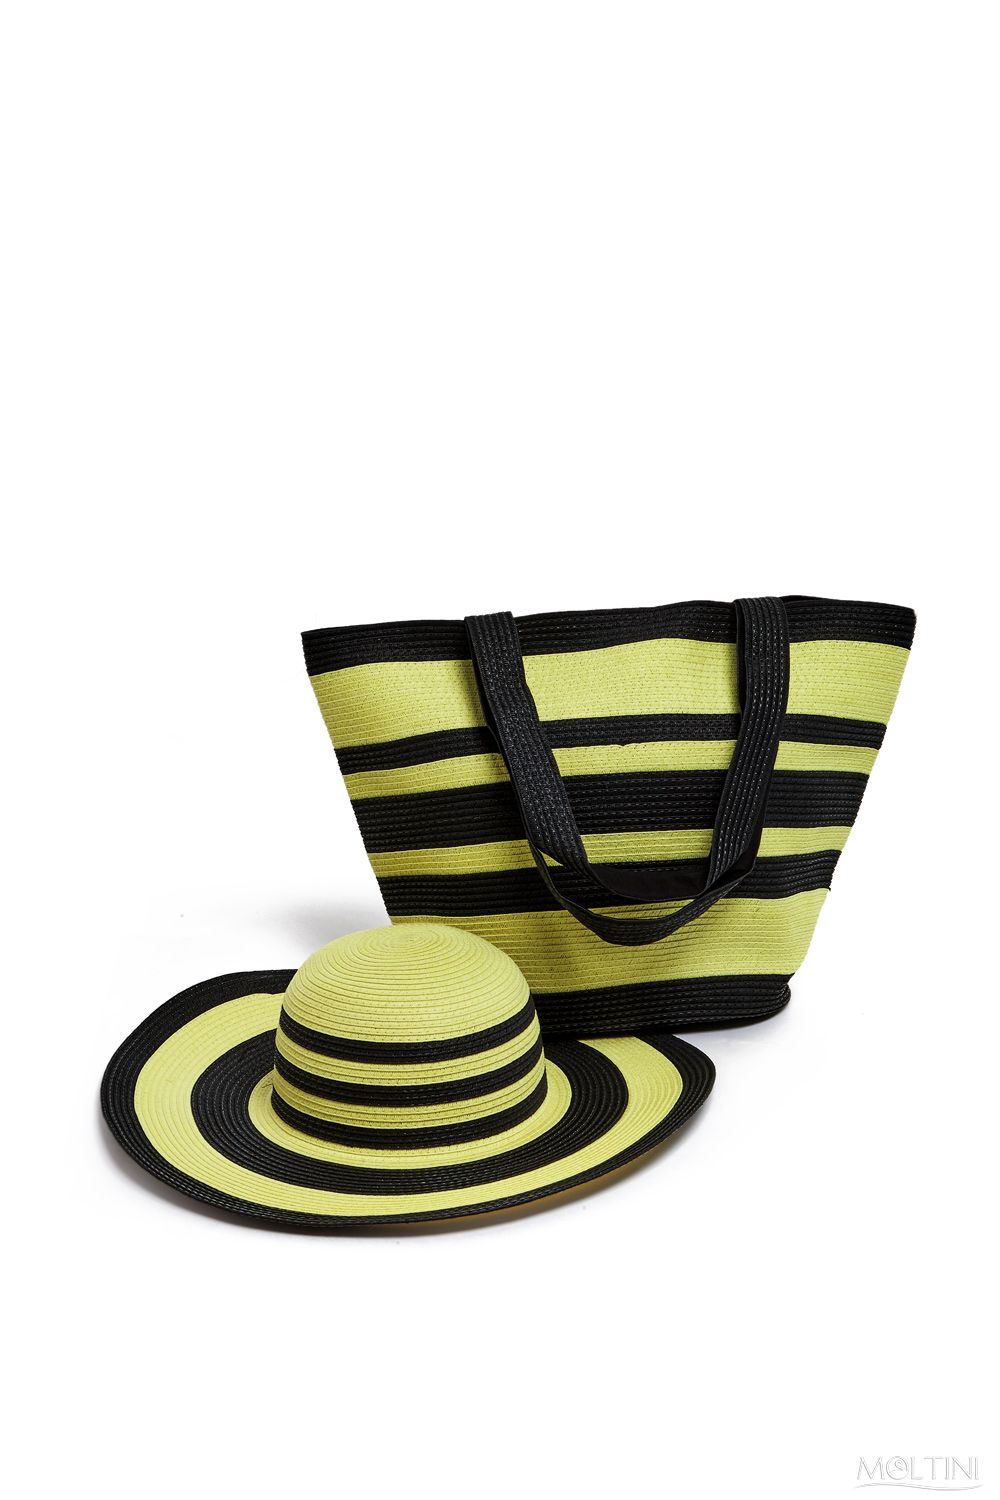 Комплект Moltini: сумка, шляпа, цвет: желтый, черный. 15J018